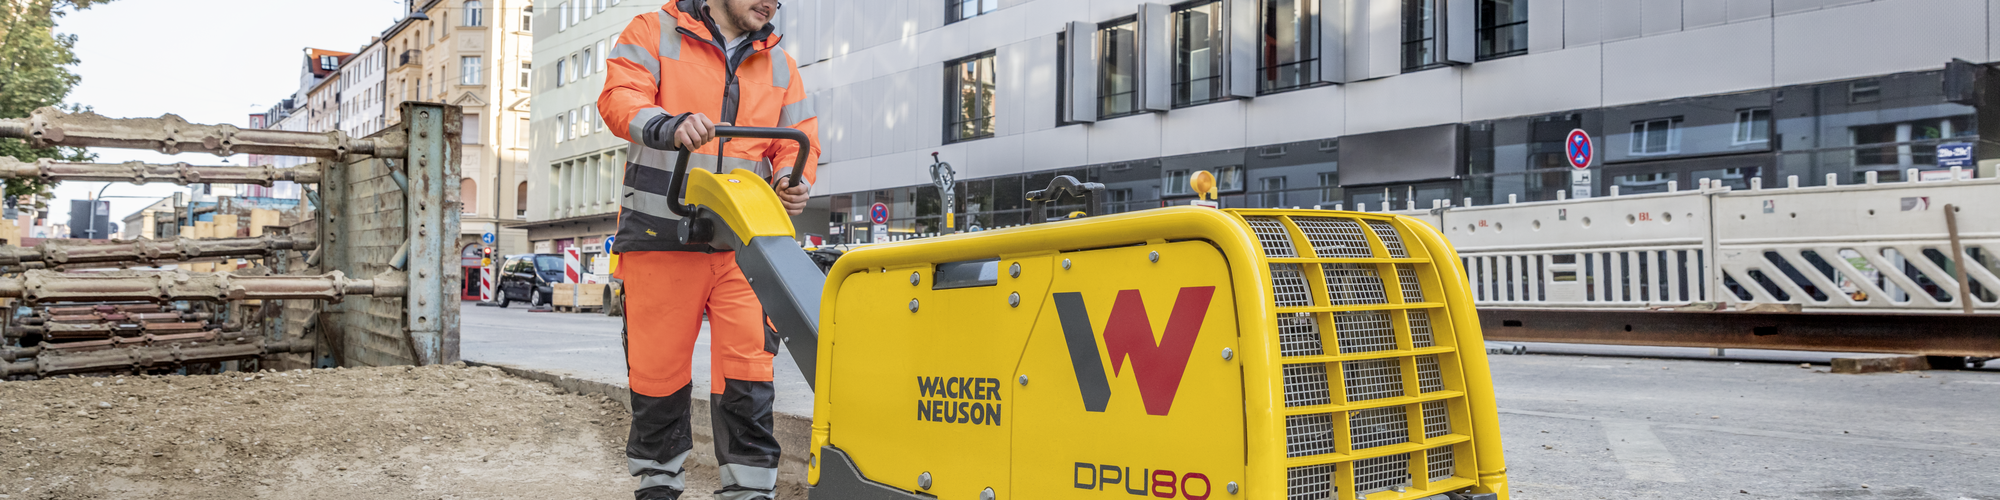 Placa vibradora Wacker Neuson em ação em um canteiro de obras na cidade.